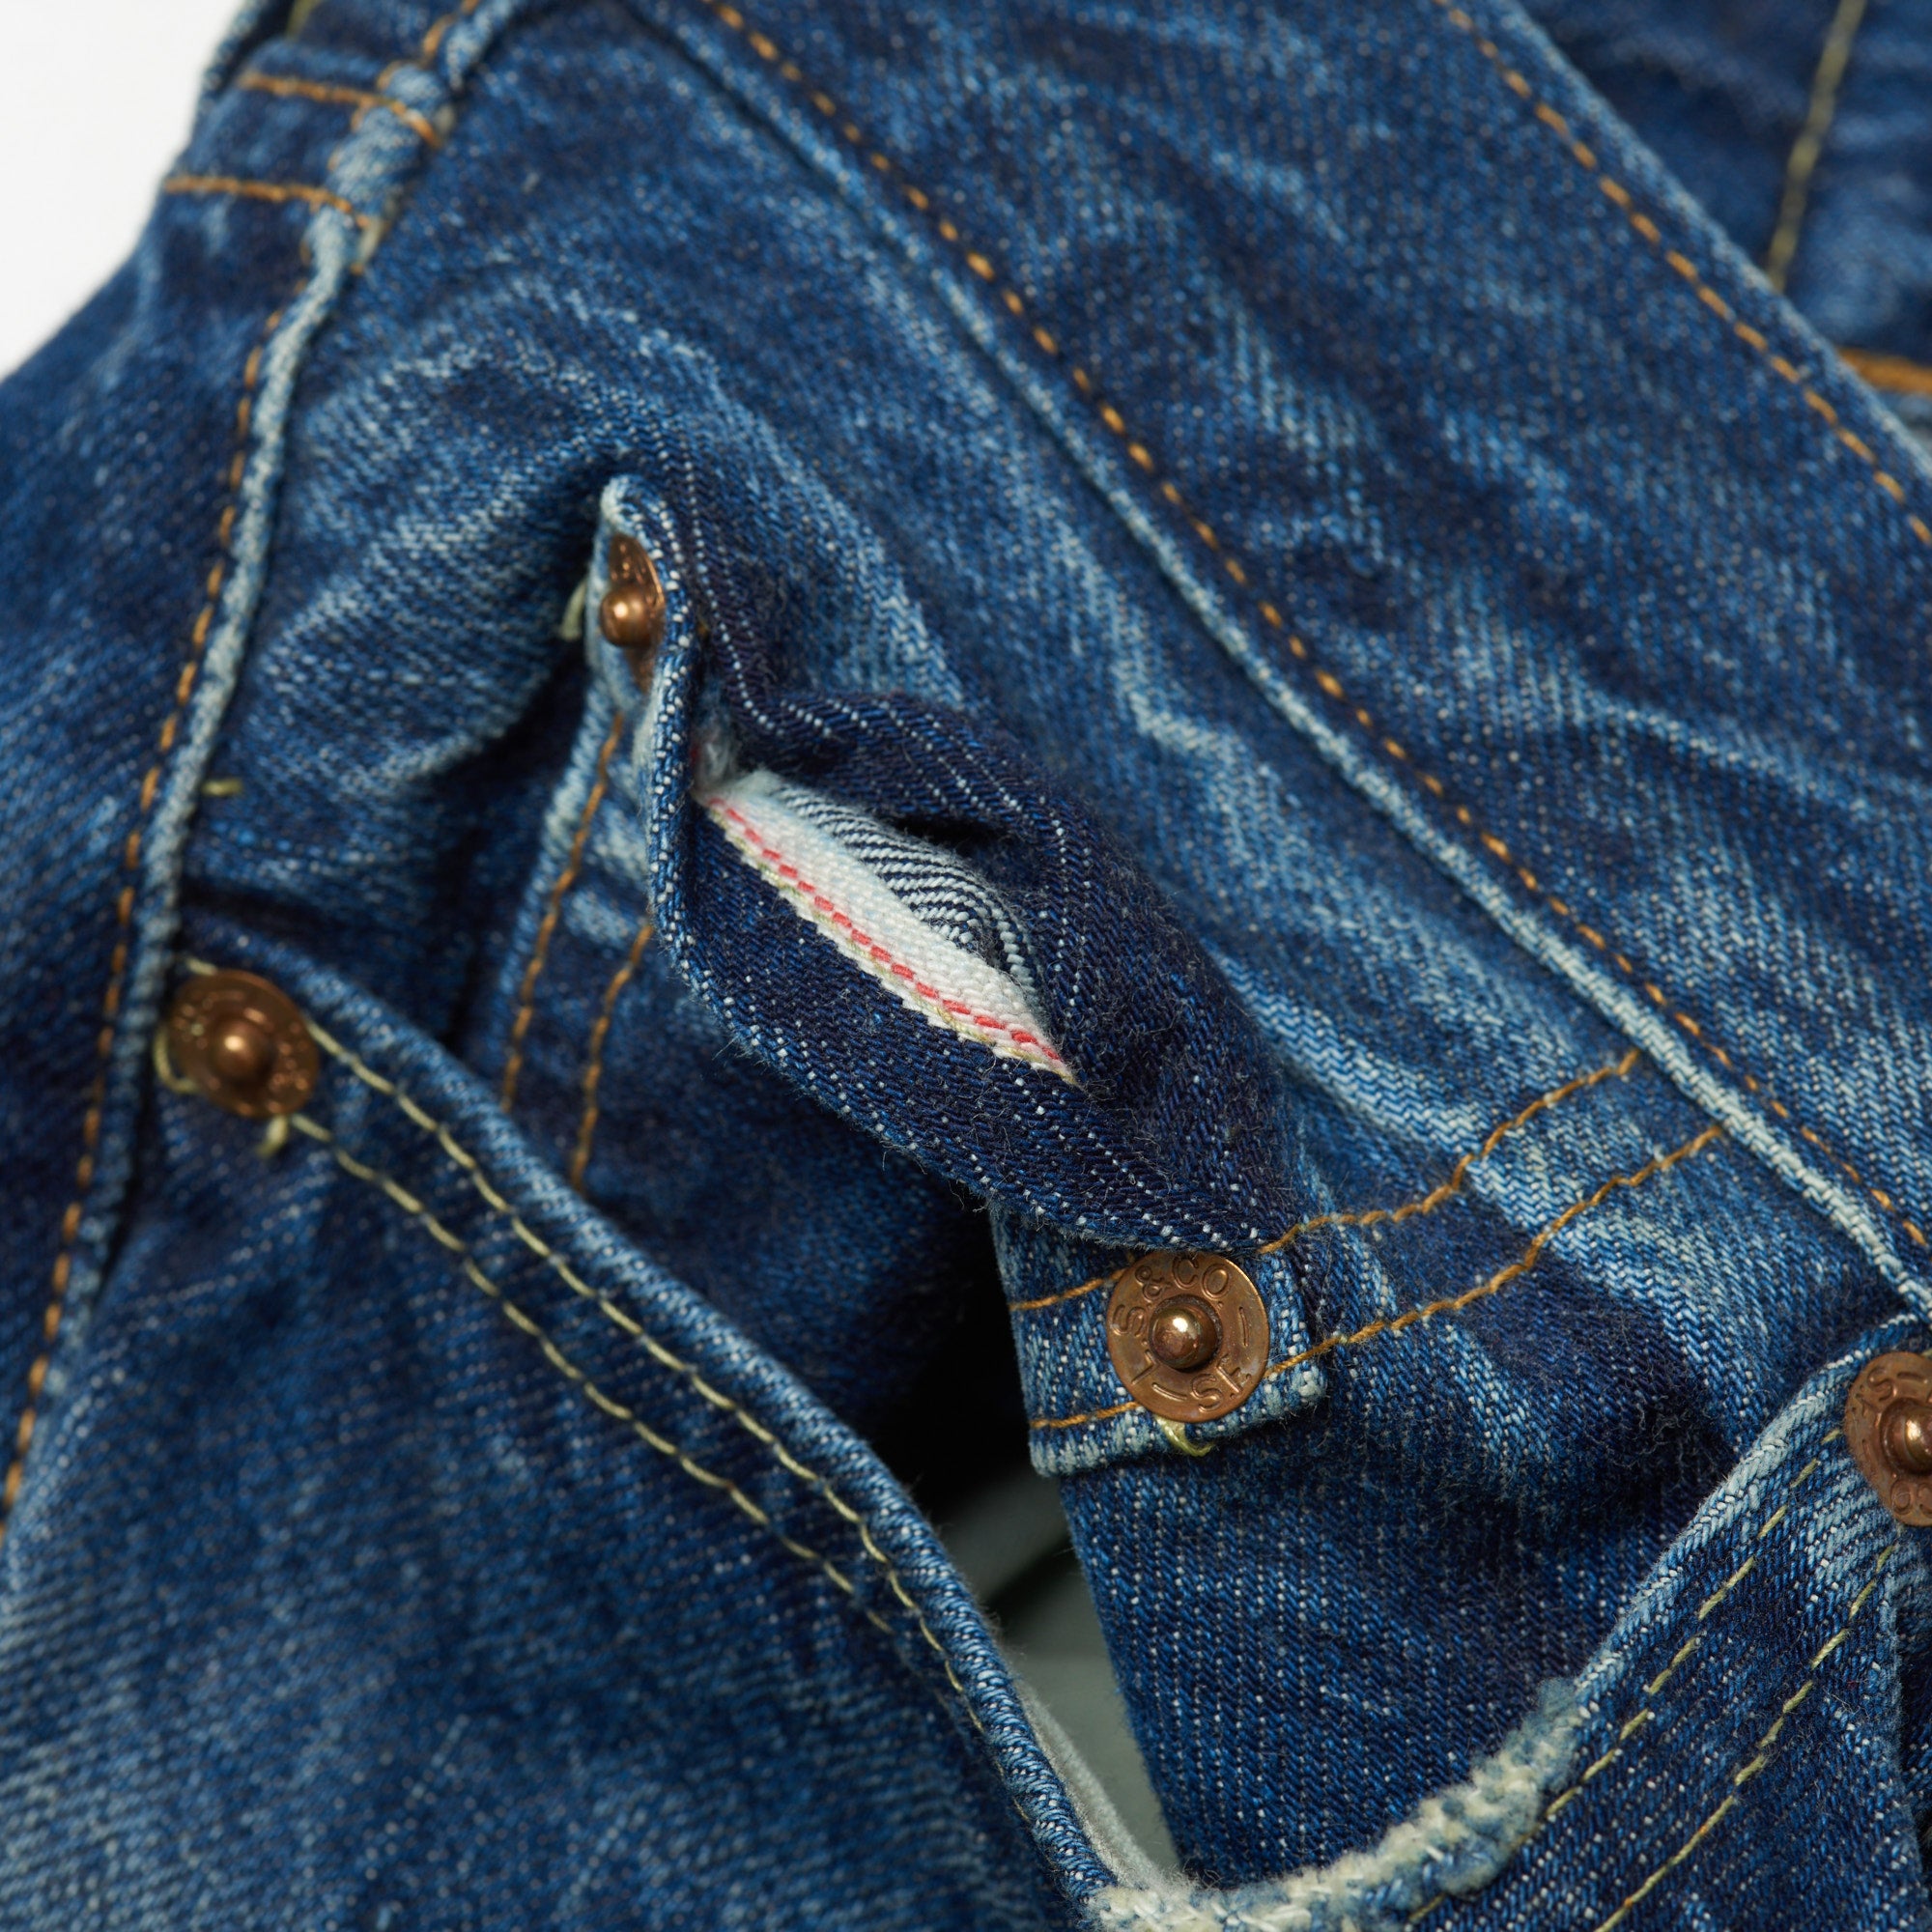 Levis Vintage Clothing LVC Selvedge Denim Jeans 